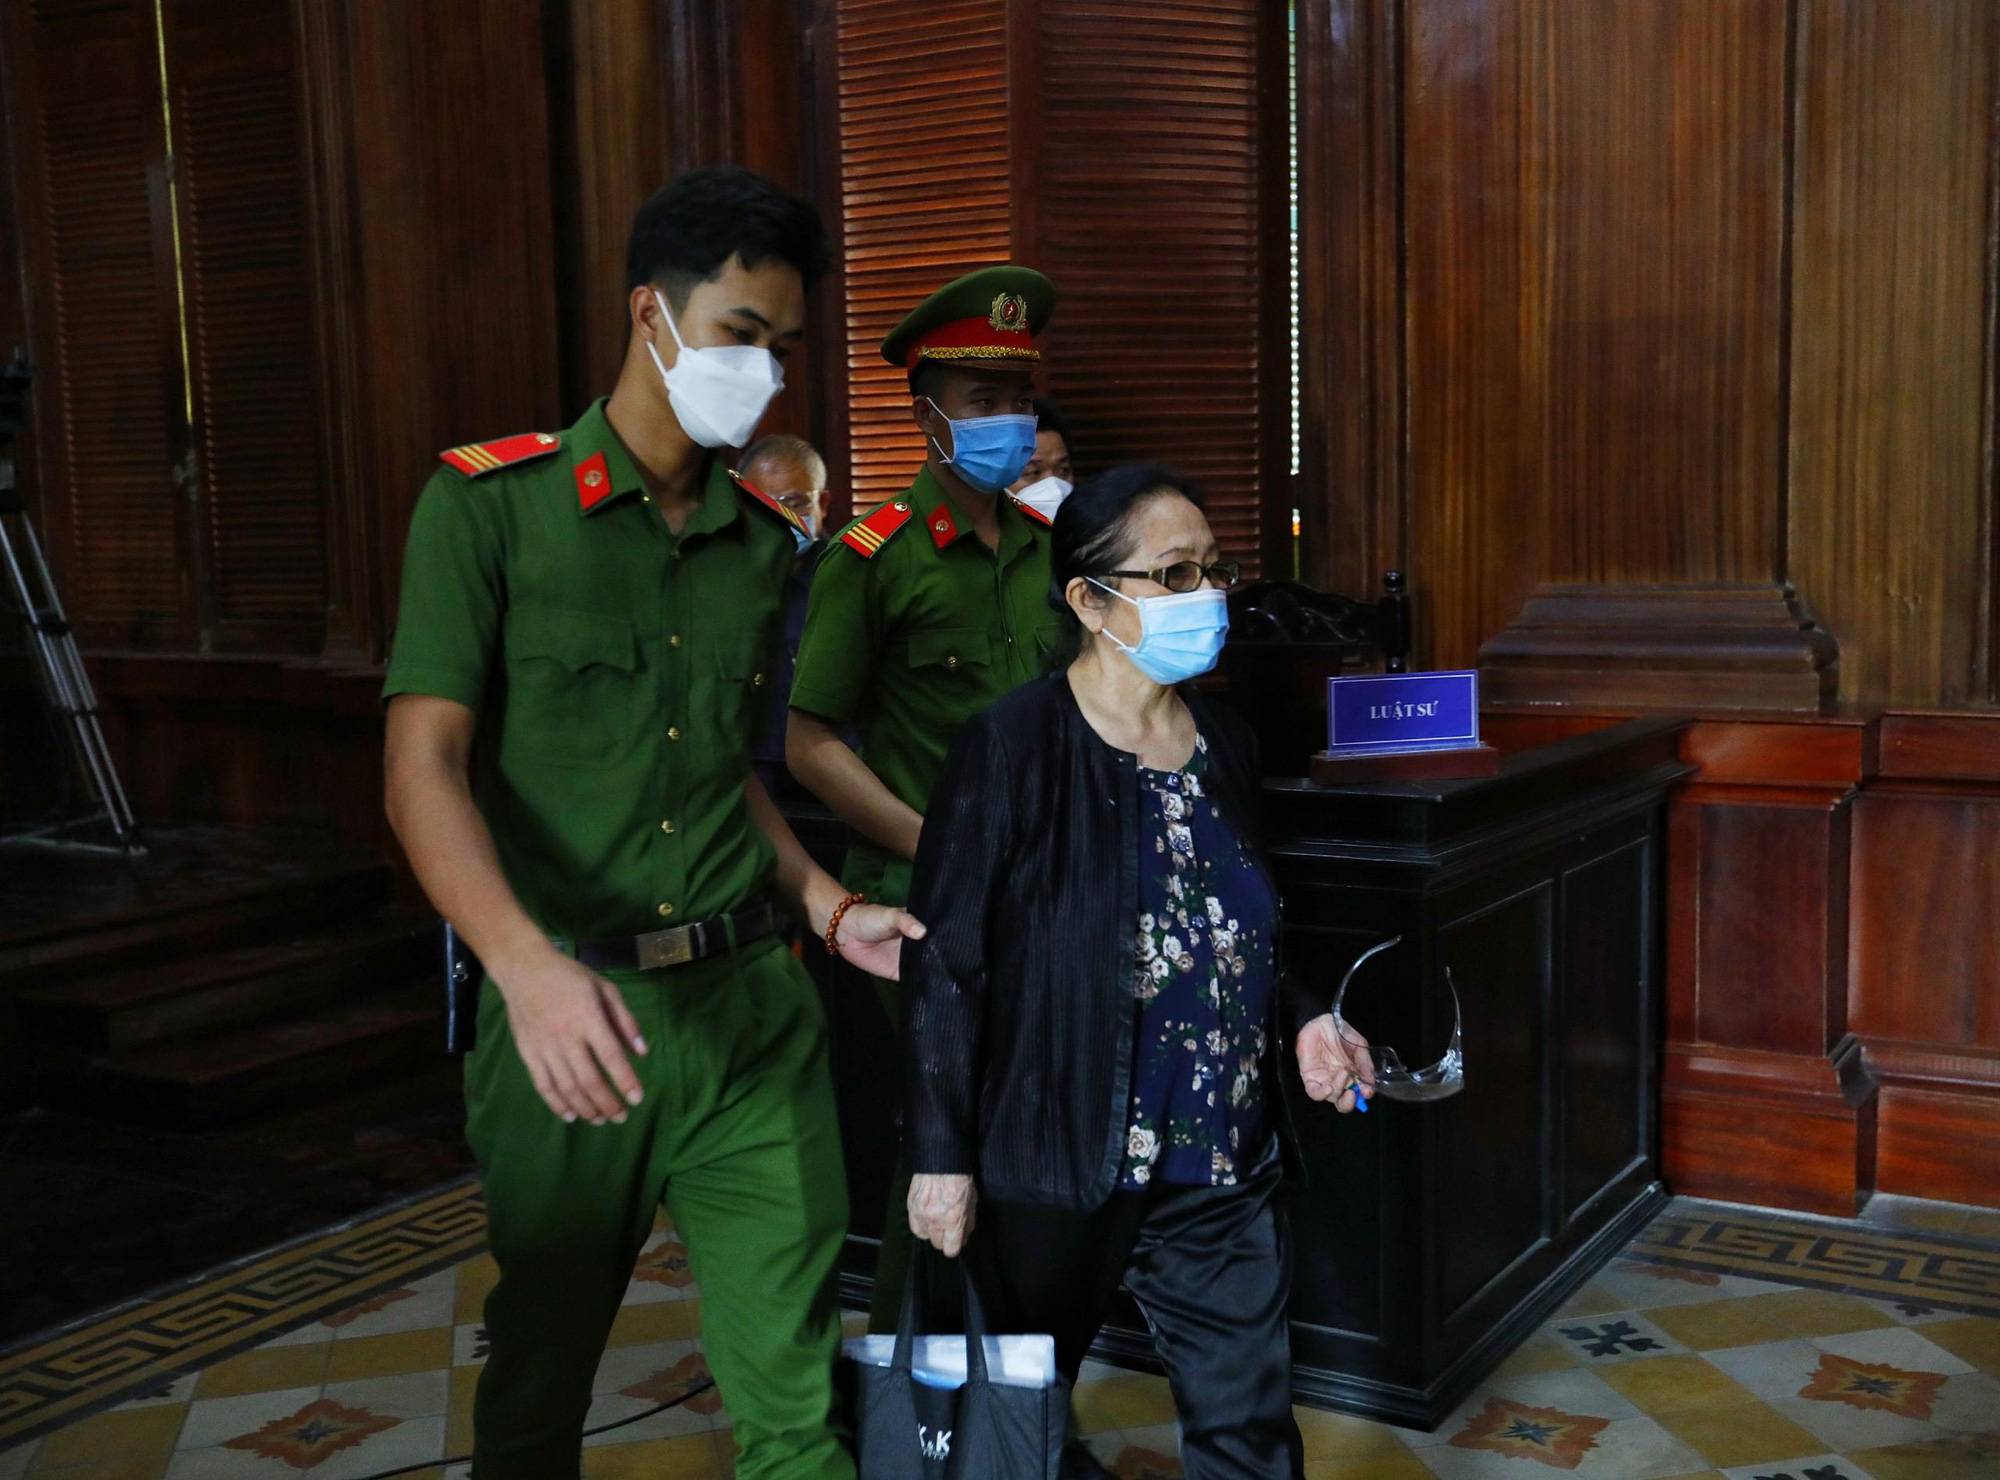 Chân dung doanh nhân Dương Thị Bạch Diệp vừa bị đề nghị án tù chung thân - Ảnh 2.